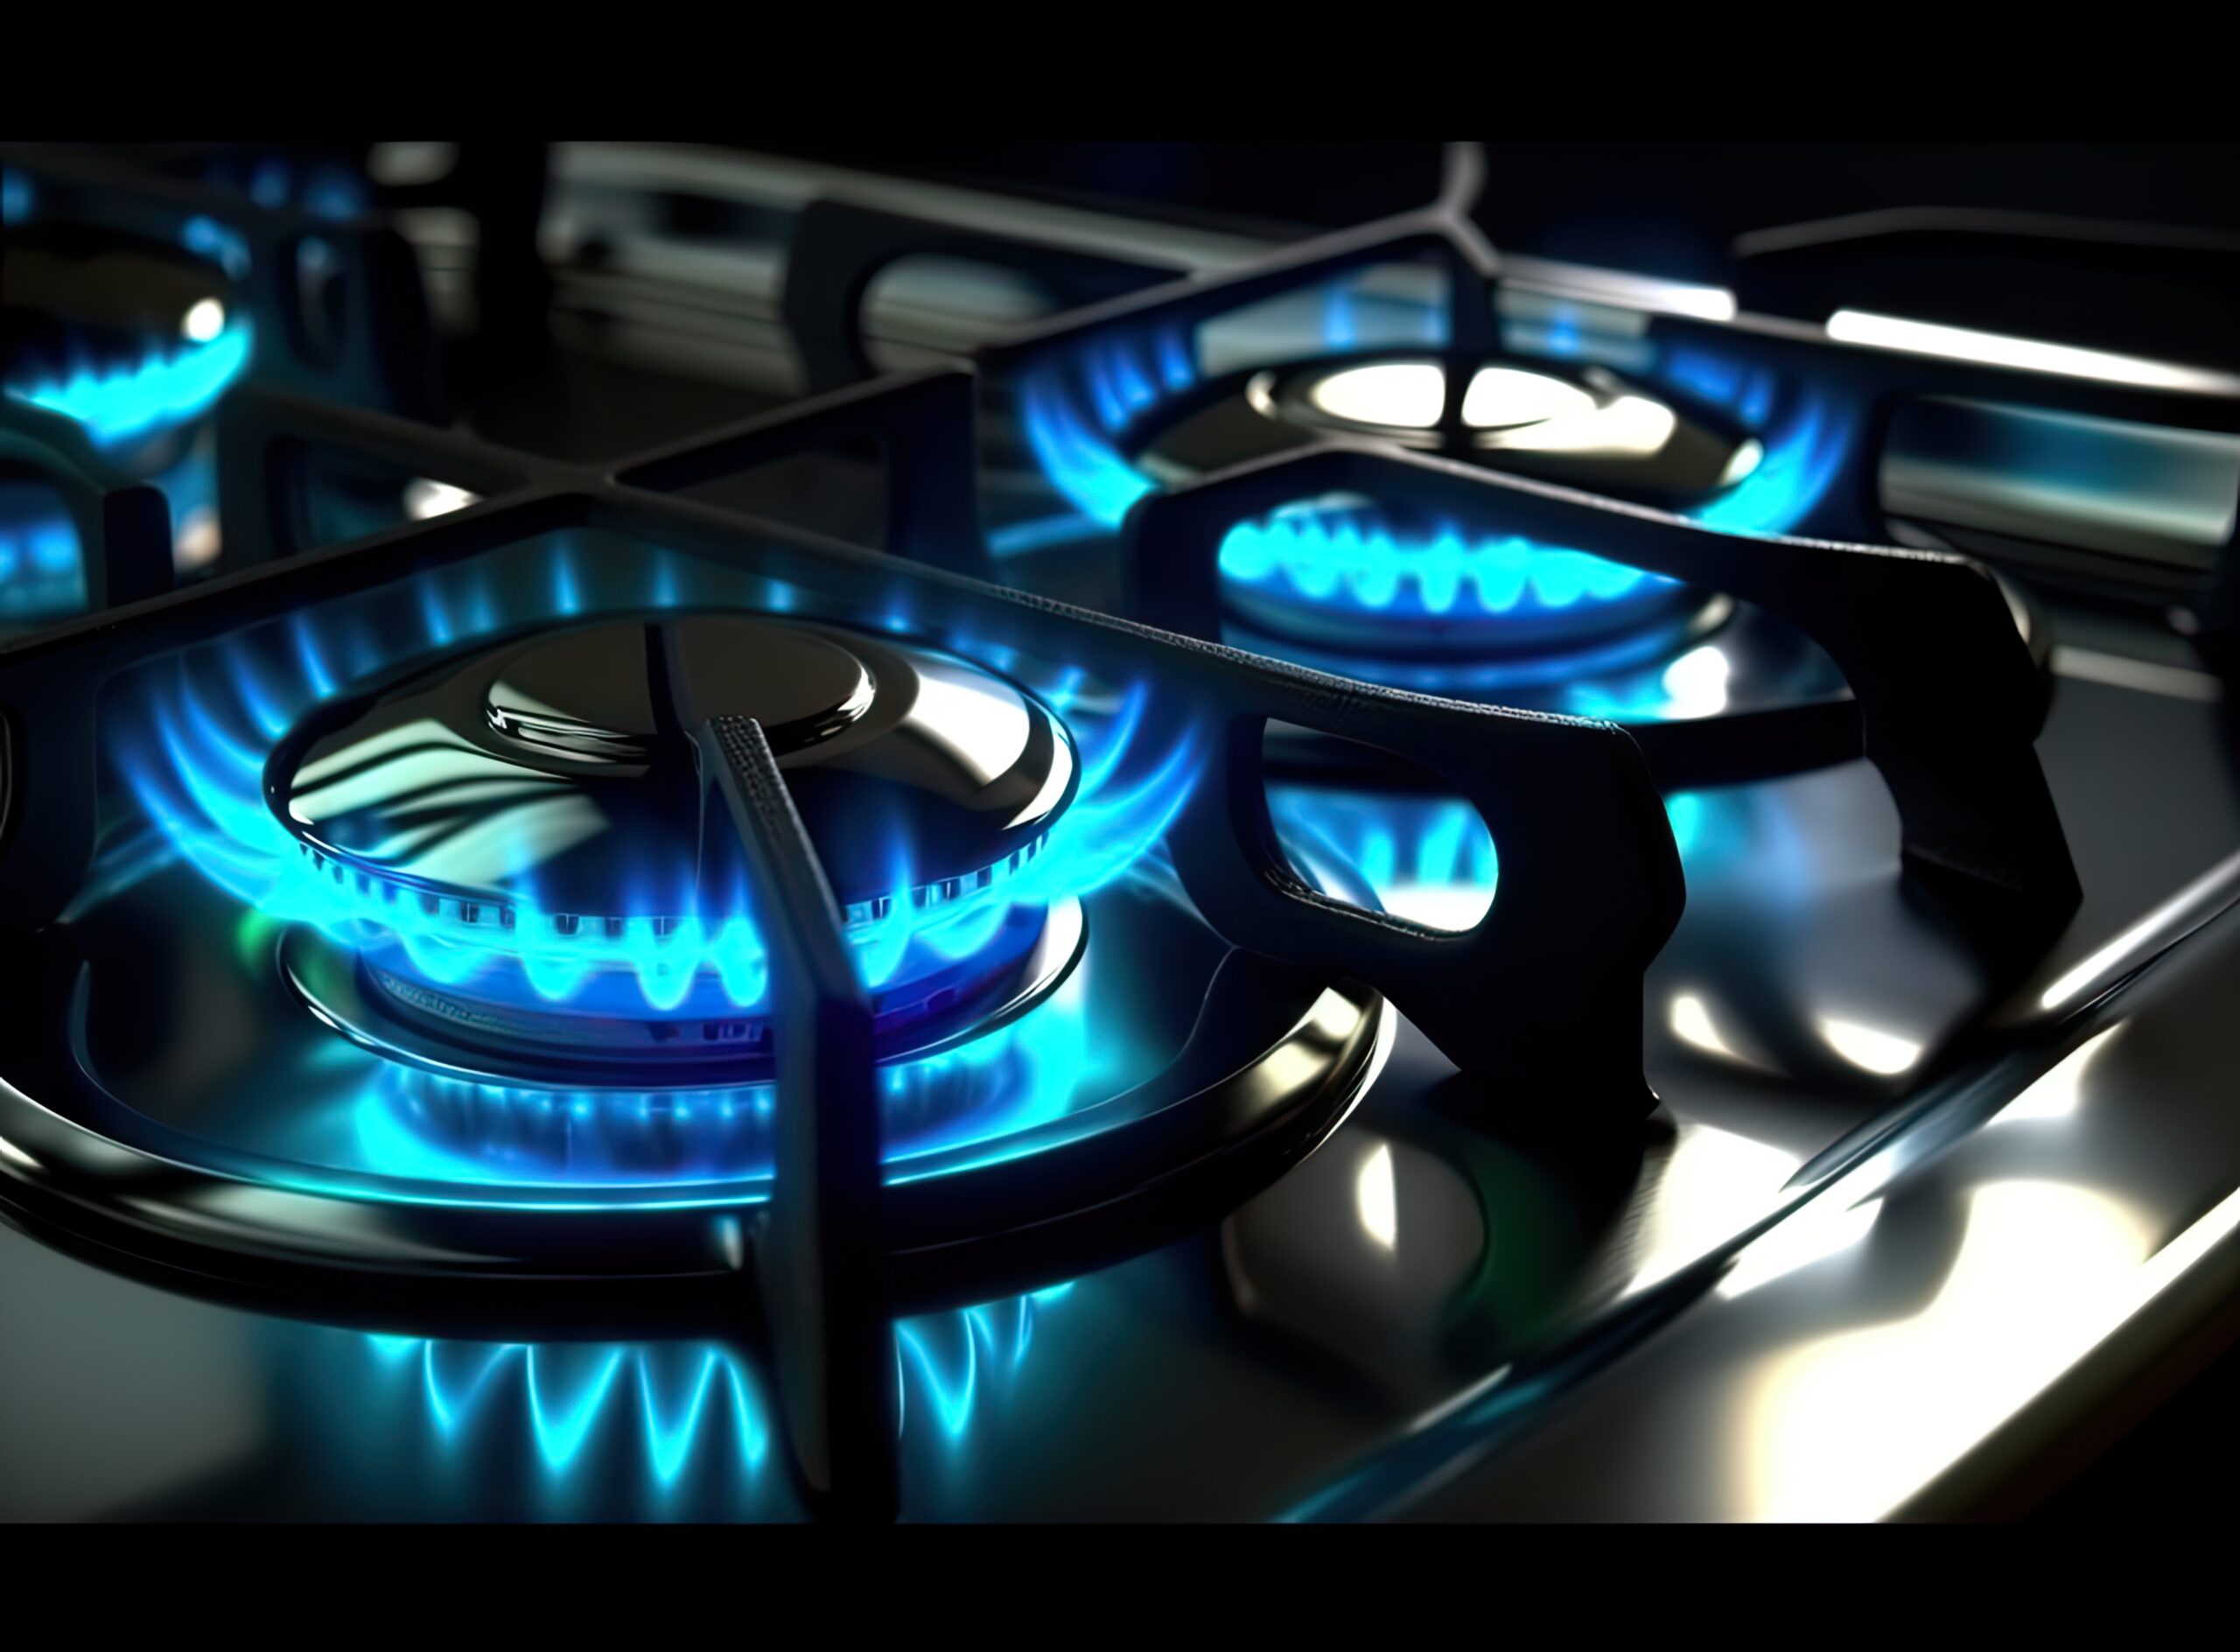 Mejores usos de gas LP en invierno mejores usos de gas lp en invierno - estufa cocina moderna llamas azules ardiendo creada tecnologia generativa al scaled - Mejores usos de gas LP en invierno